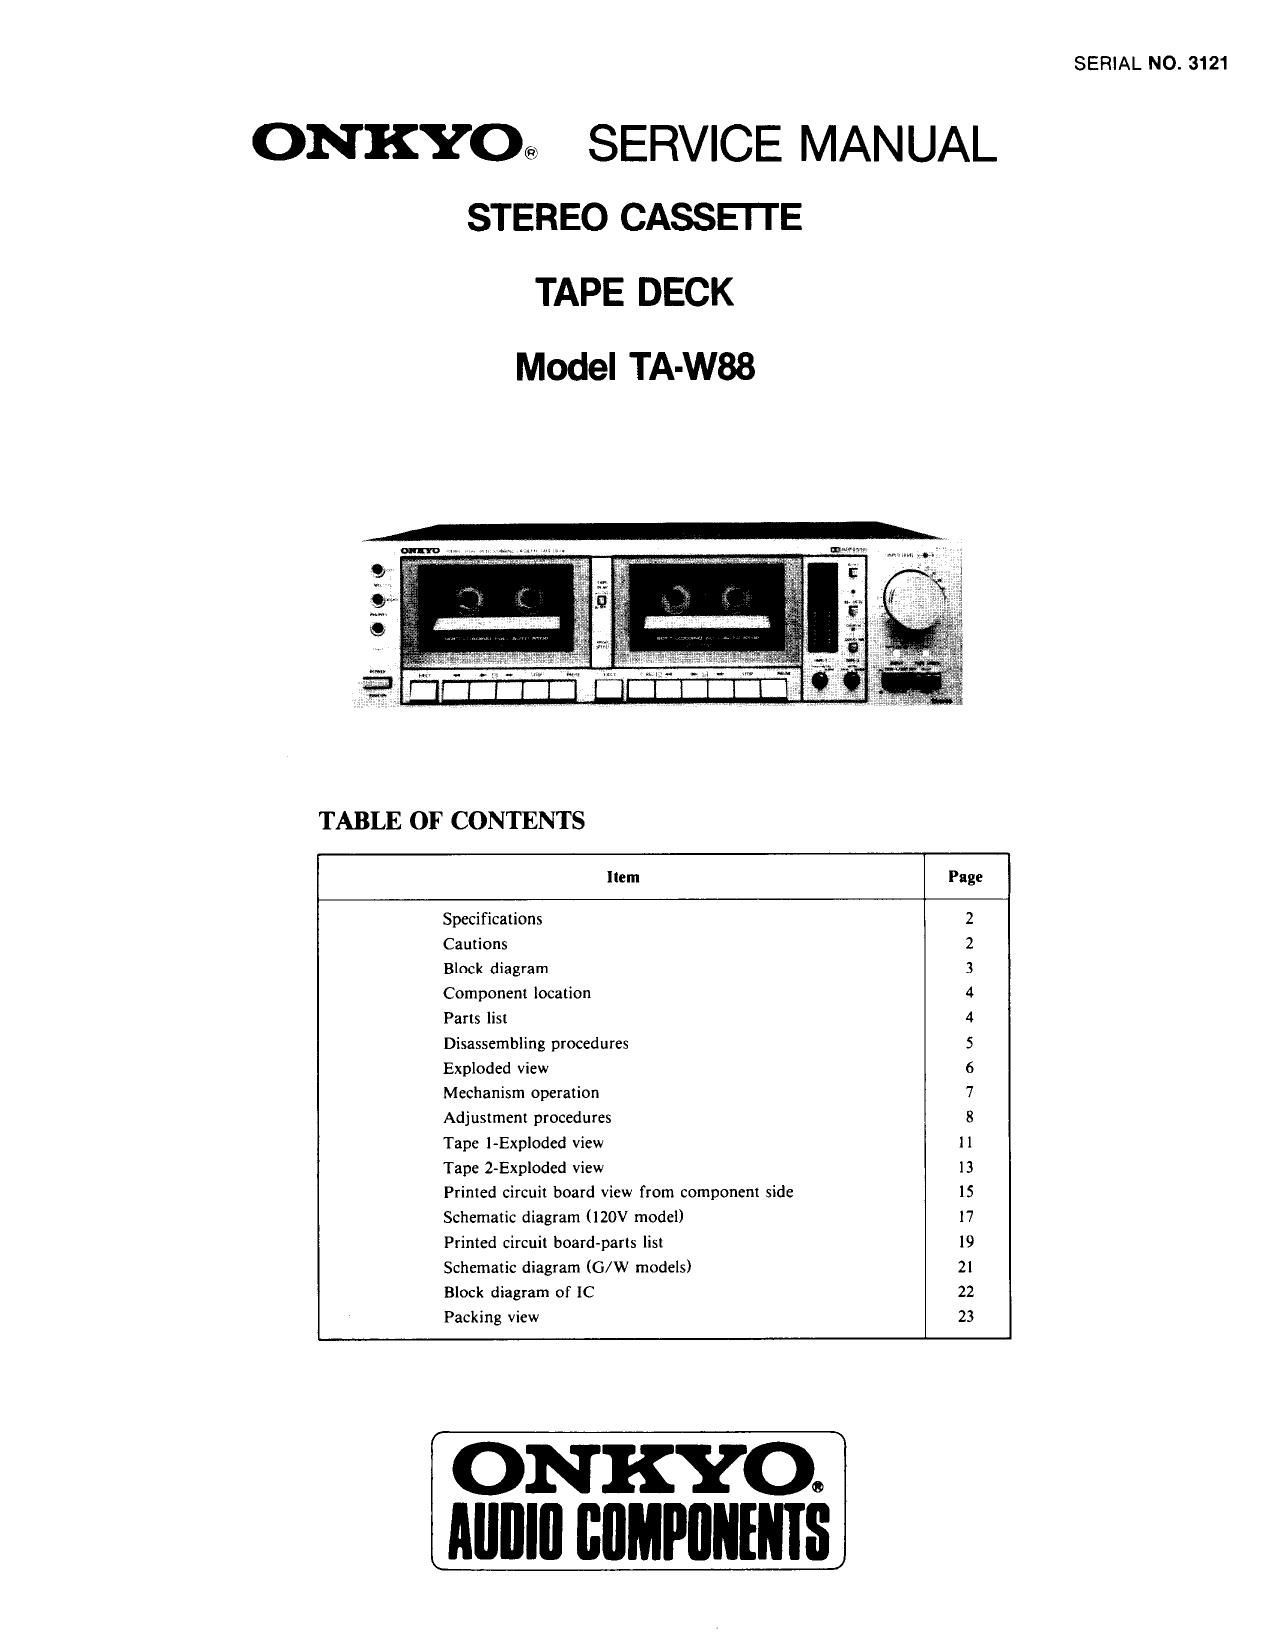 Onkyo TARW 88 Service Manual